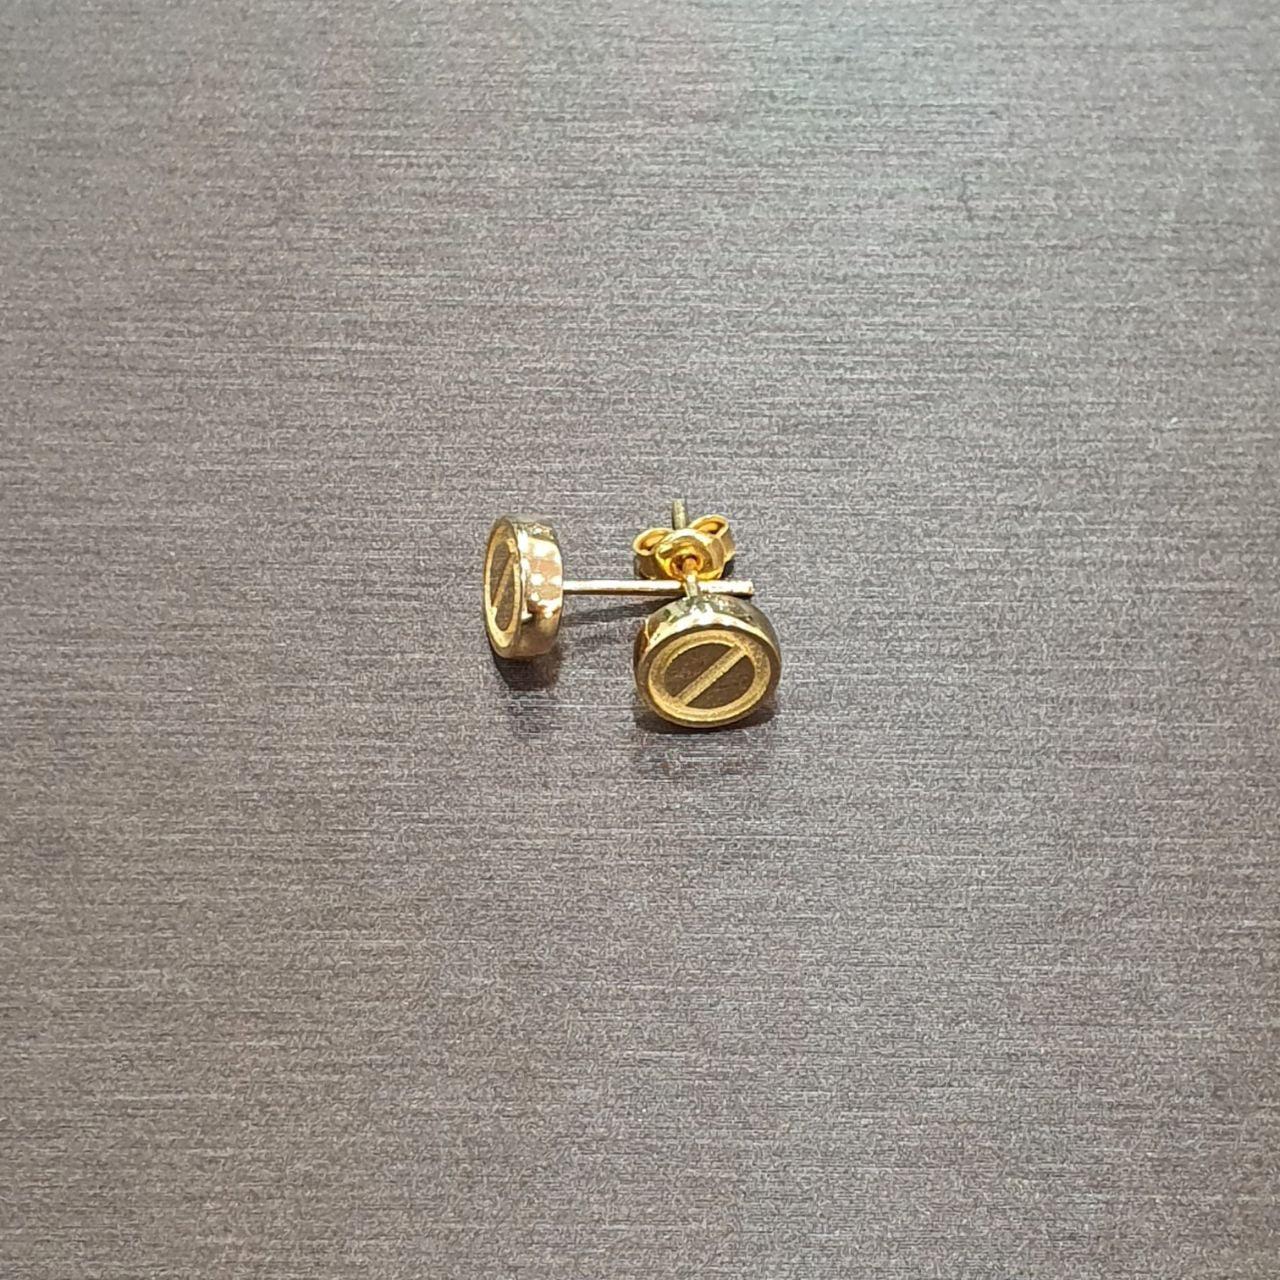 22K / 916 Gold C design Stud Earring-Earrings-Best Gold Shop